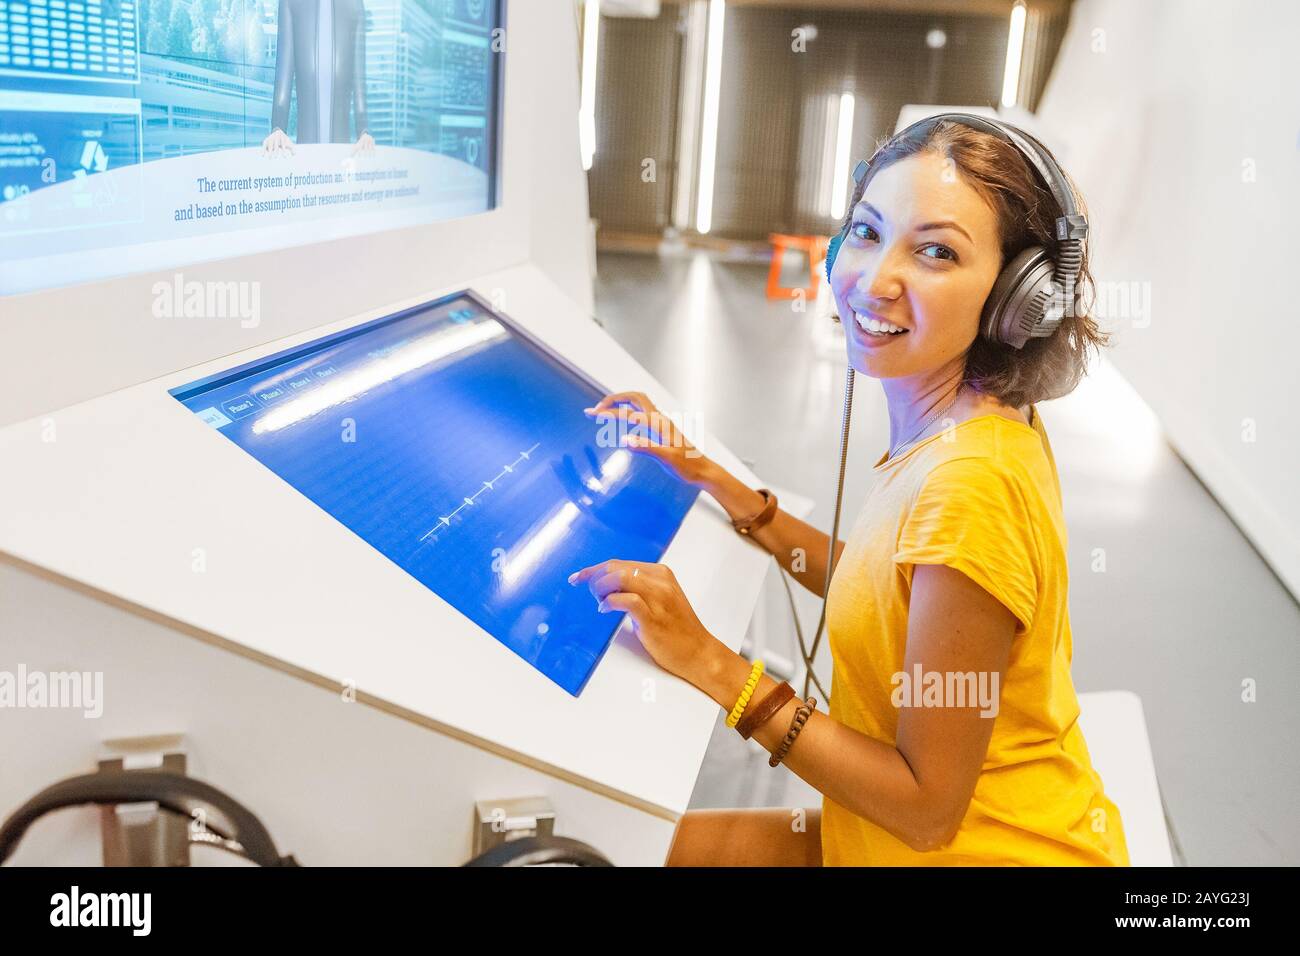 28 LUGLIO 2018, BARCELLONA, SPAGNA: La donna utilizza un moderno computer interattivo nel museo, concetto di tecnologie didattiche Foto Stock